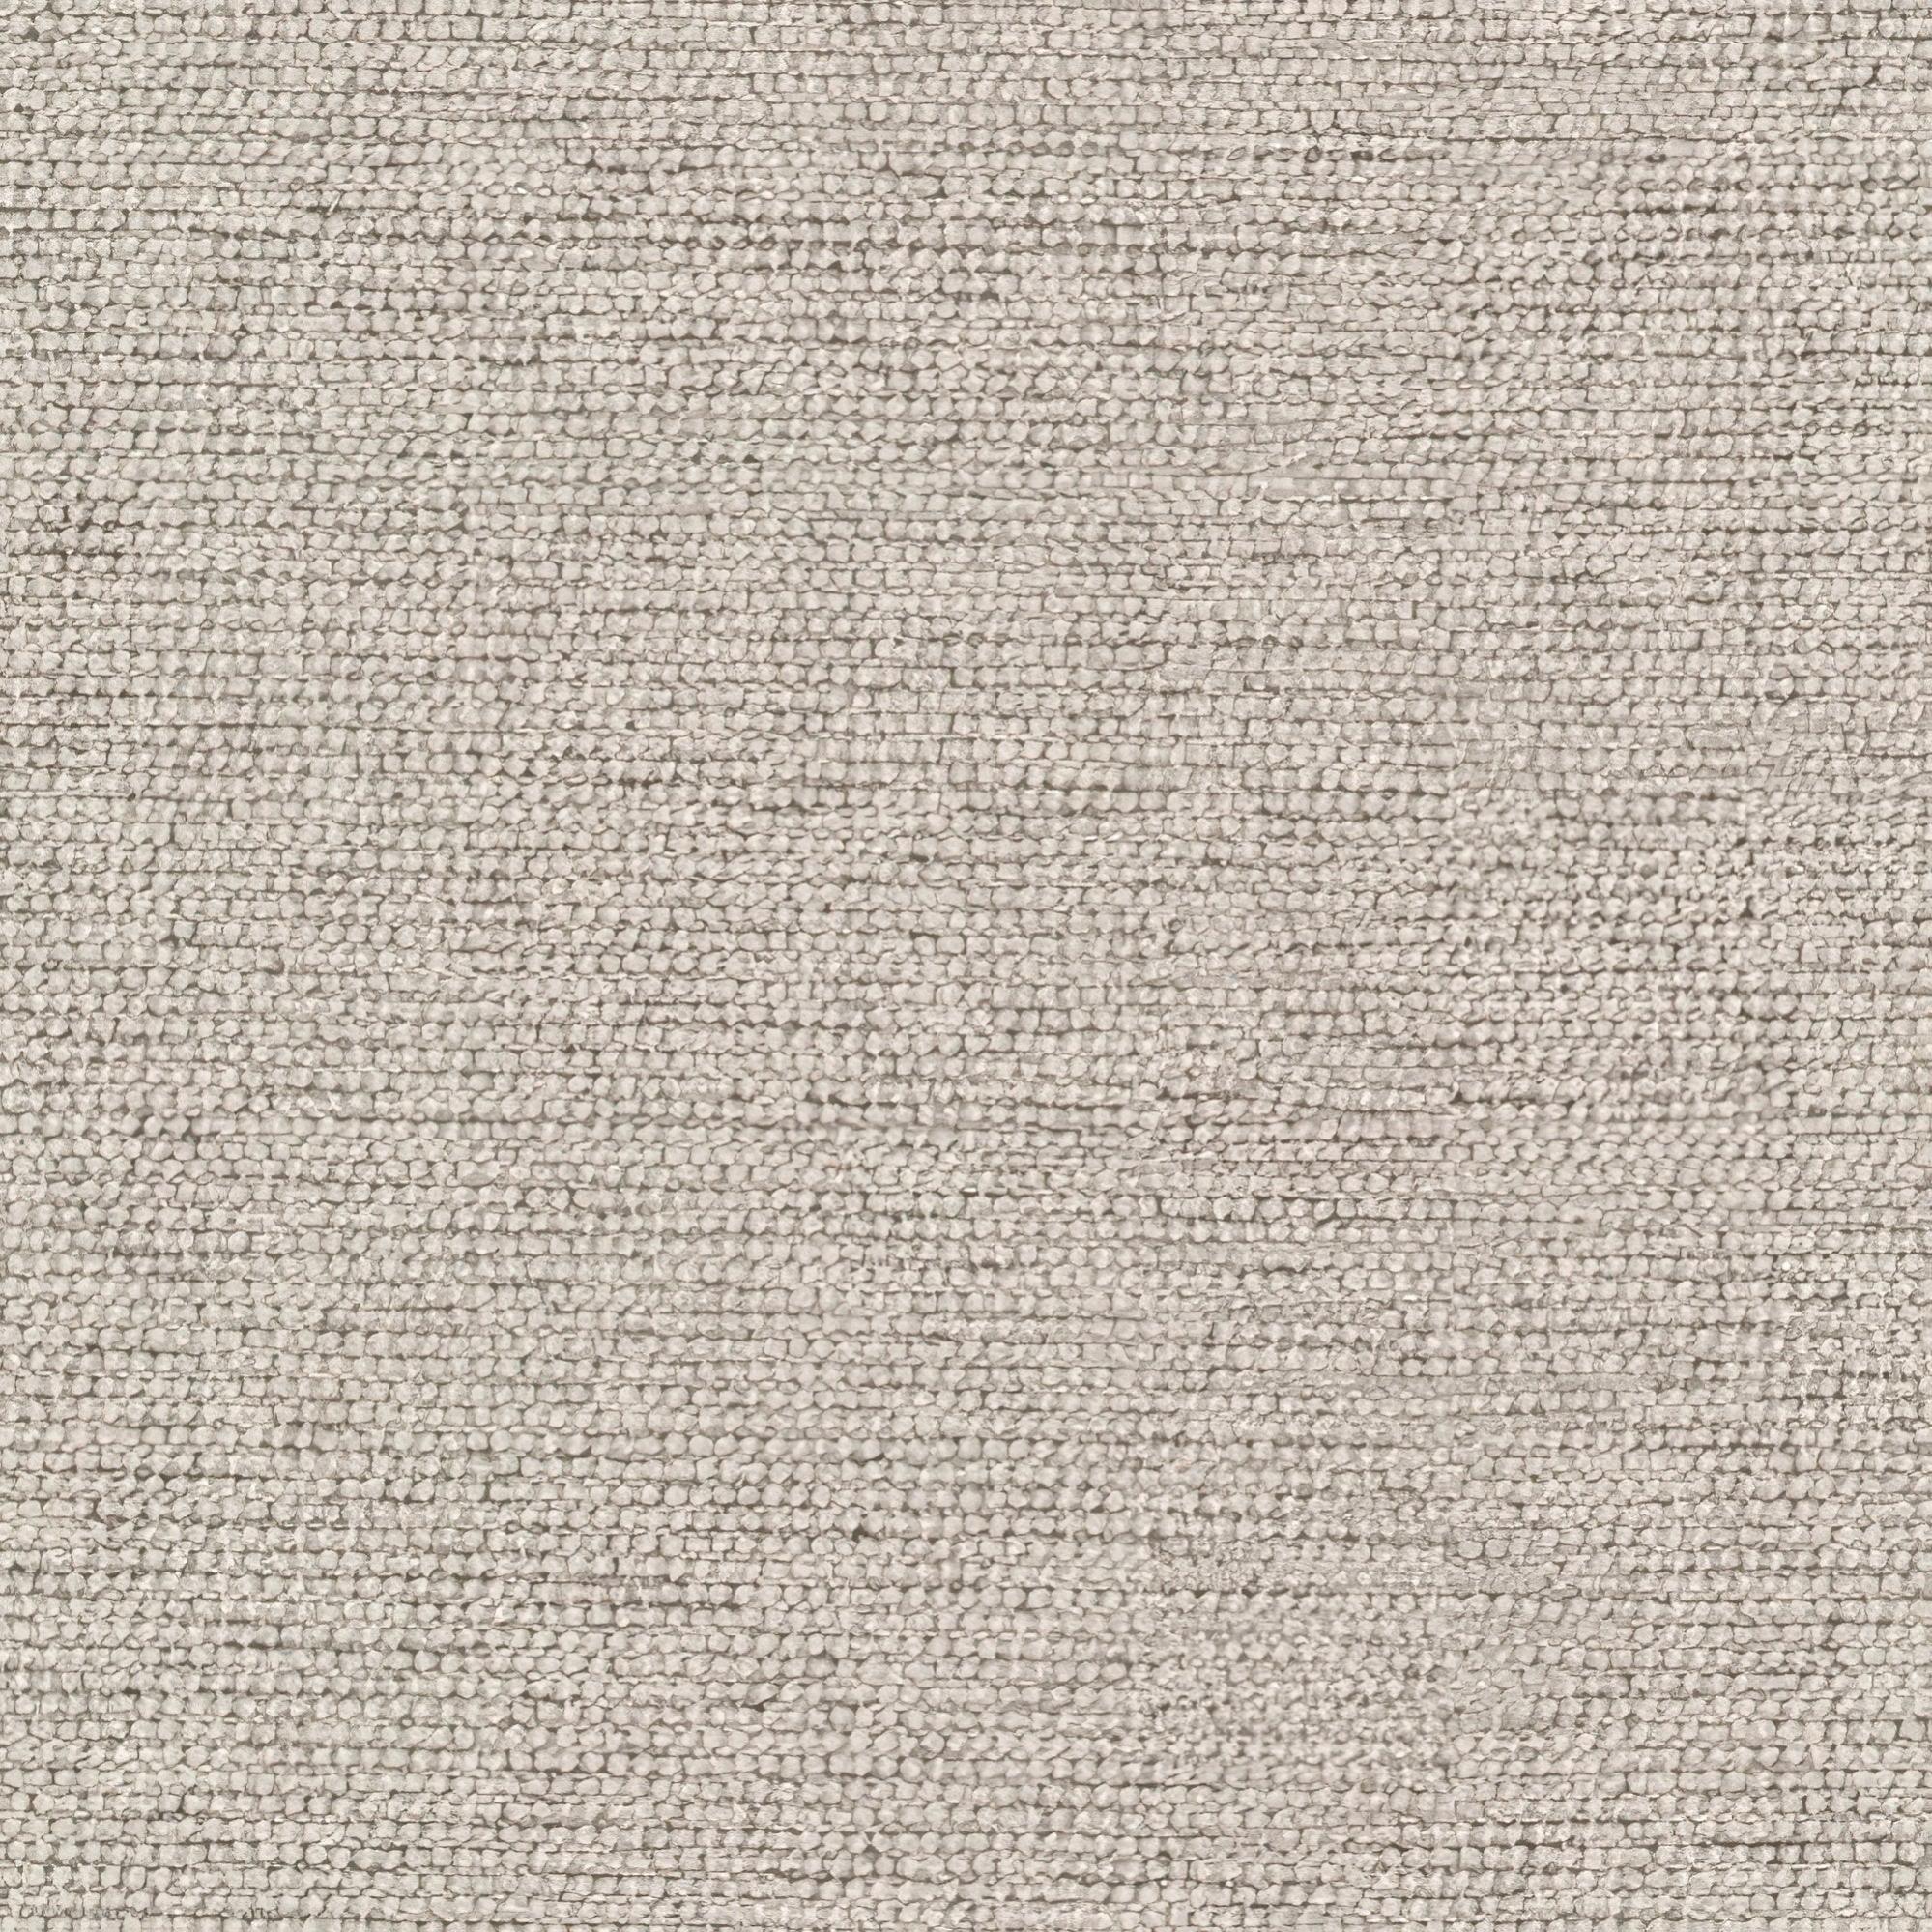 Tela al corte tapicería jacquard aberdeen marron ancho 140 cm